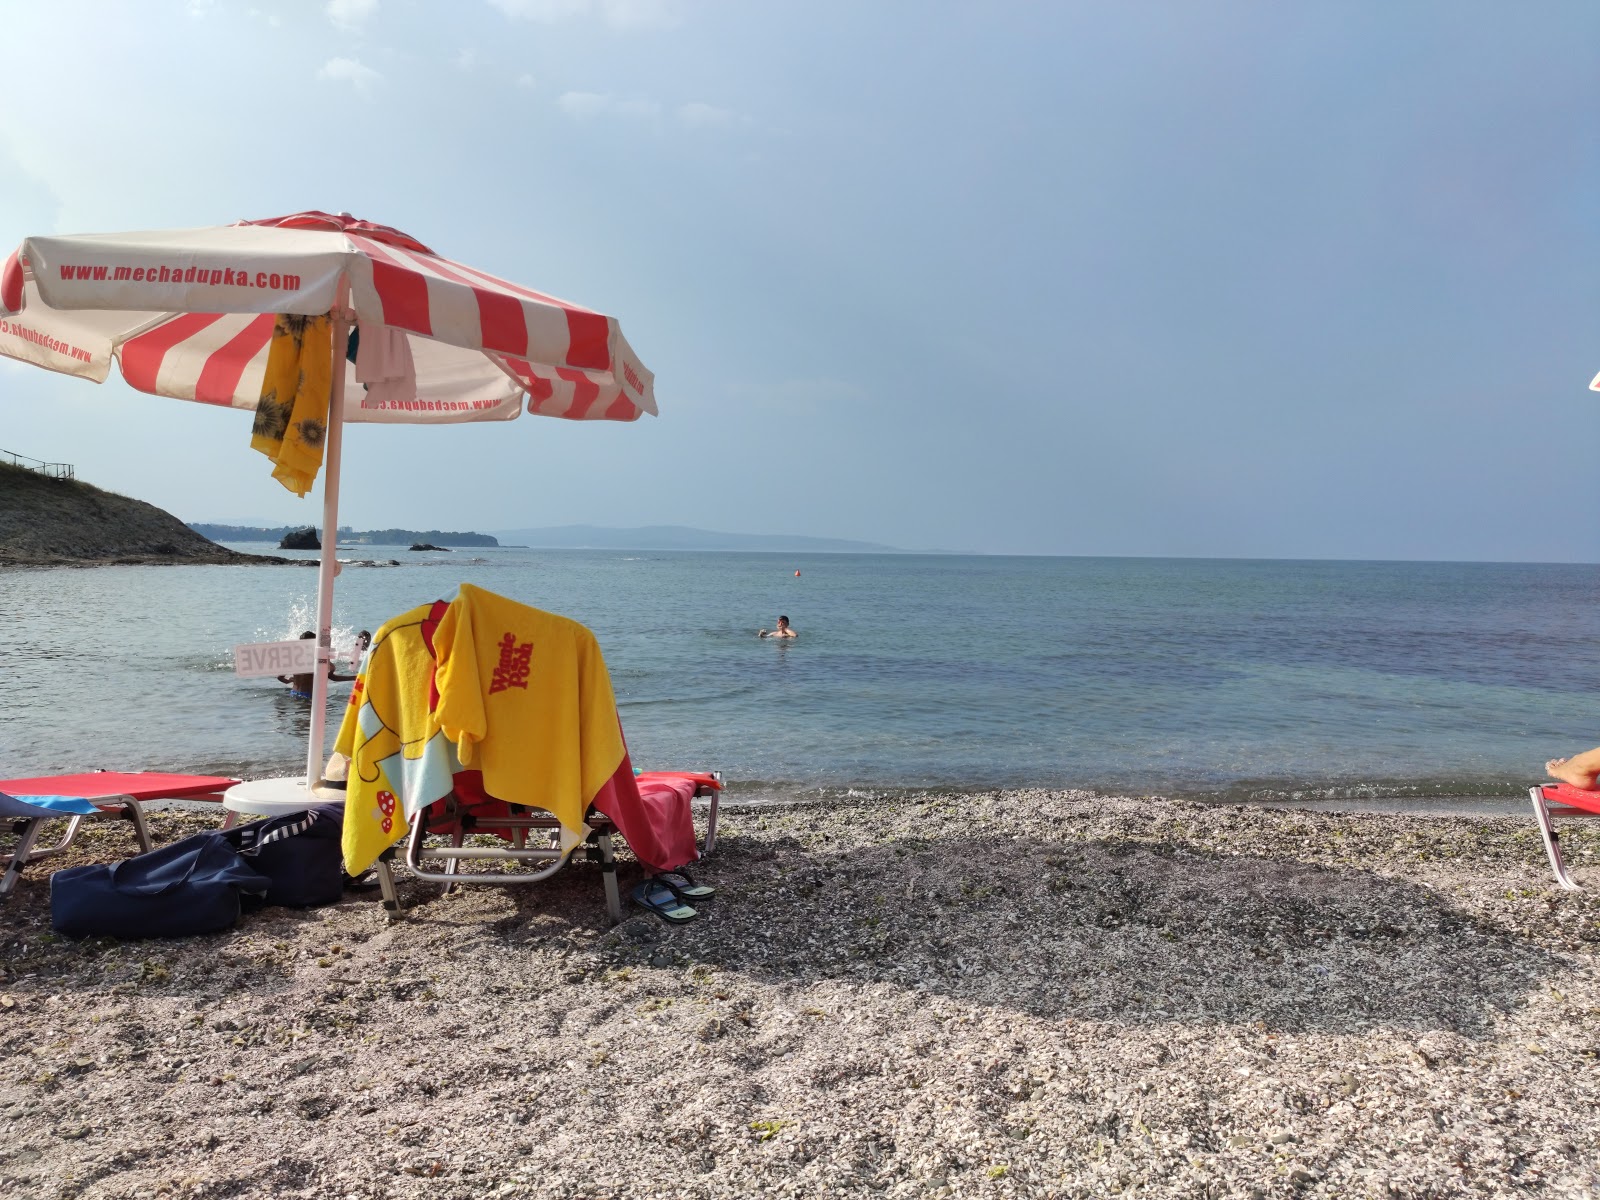 Foto de Mechata Dupka beach con muy limpio nivel de limpieza